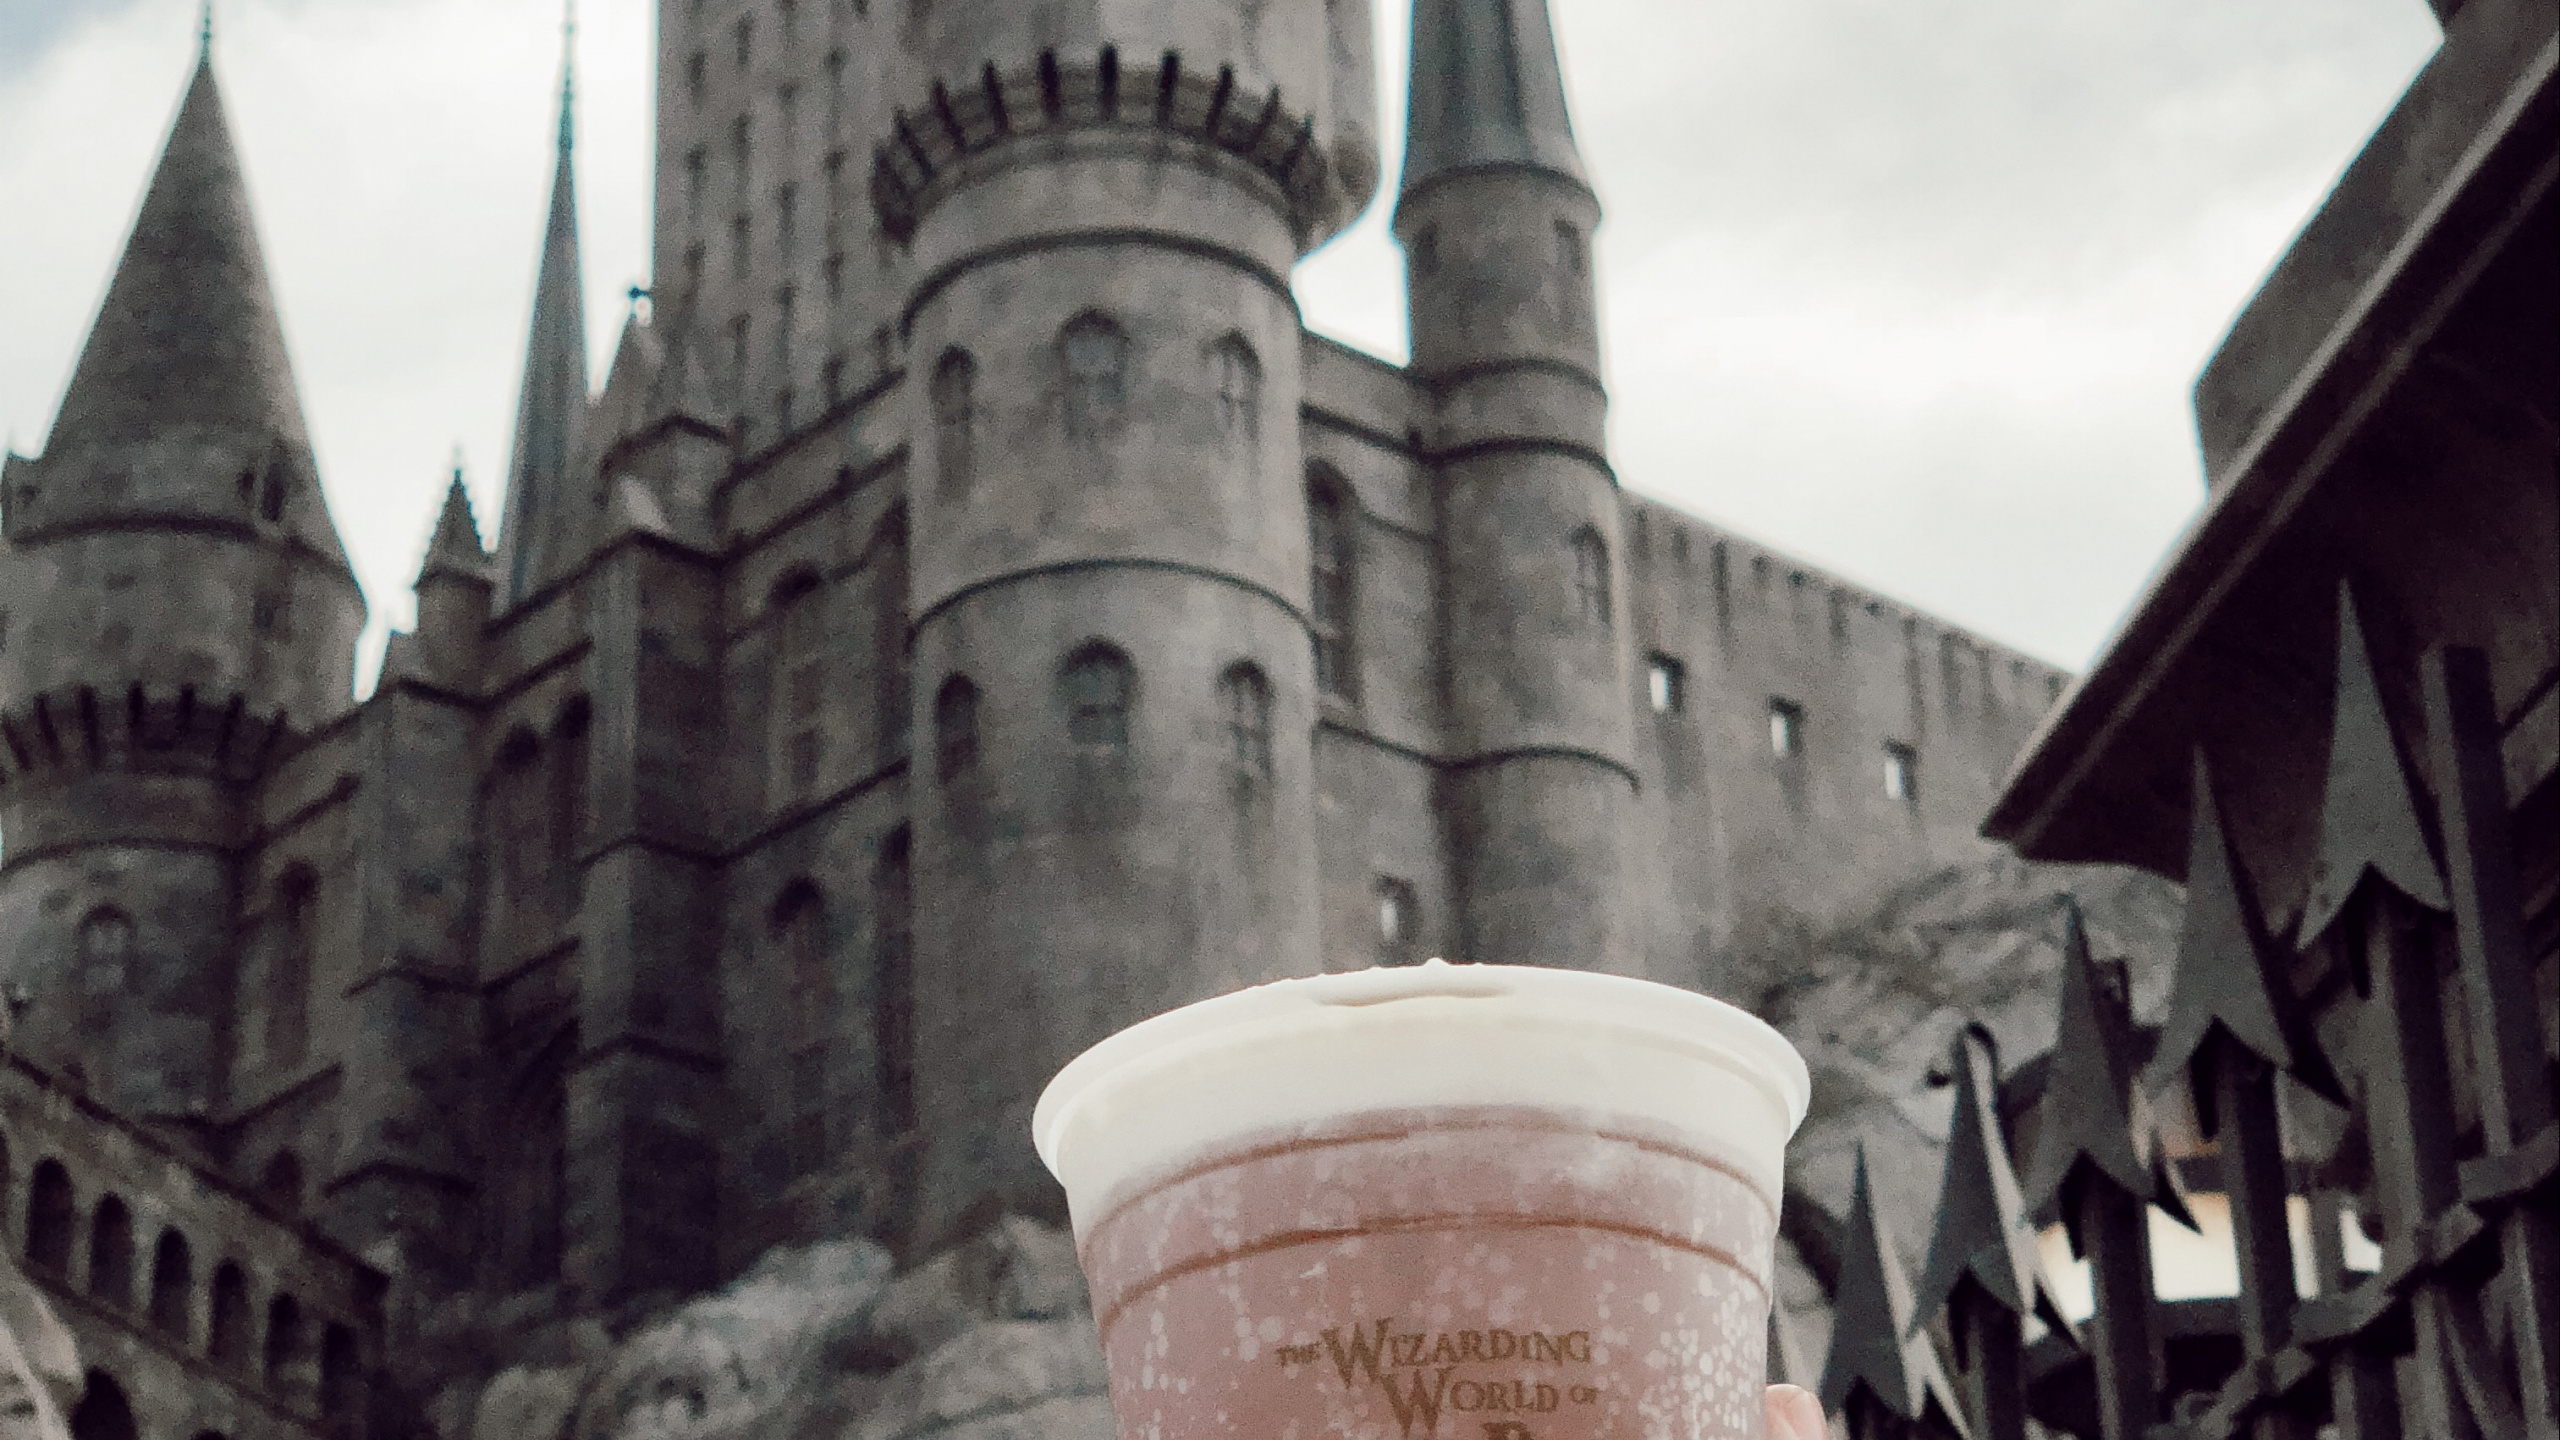 Hogwarts, 城堡, 尖顶, 炮塔, 中世纪建筑风格 壁纸 2560x1440 允许